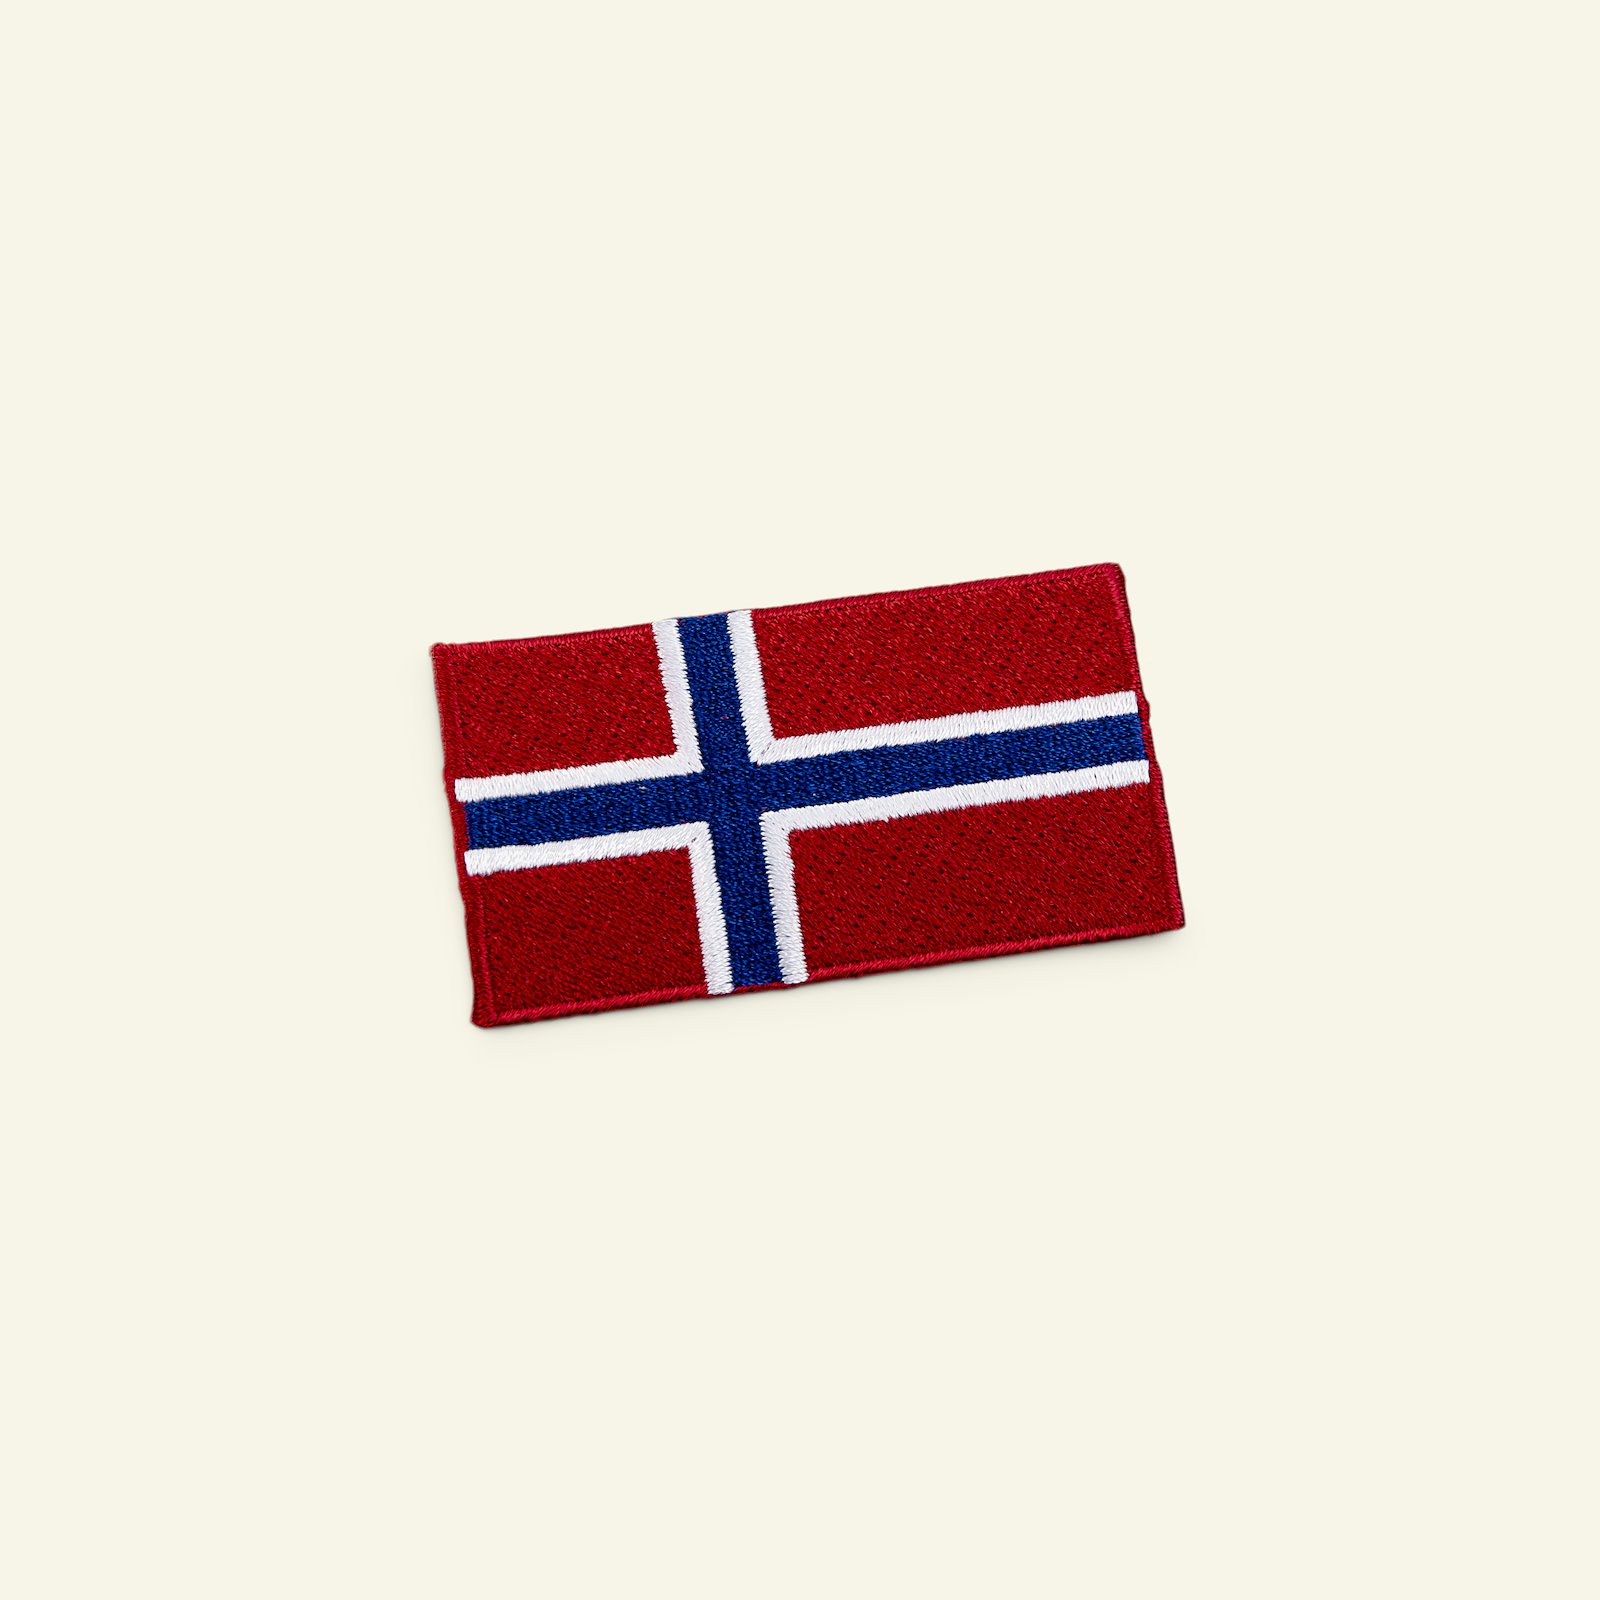 Symärke Norsk flagga 68x38 mm 23718_pack